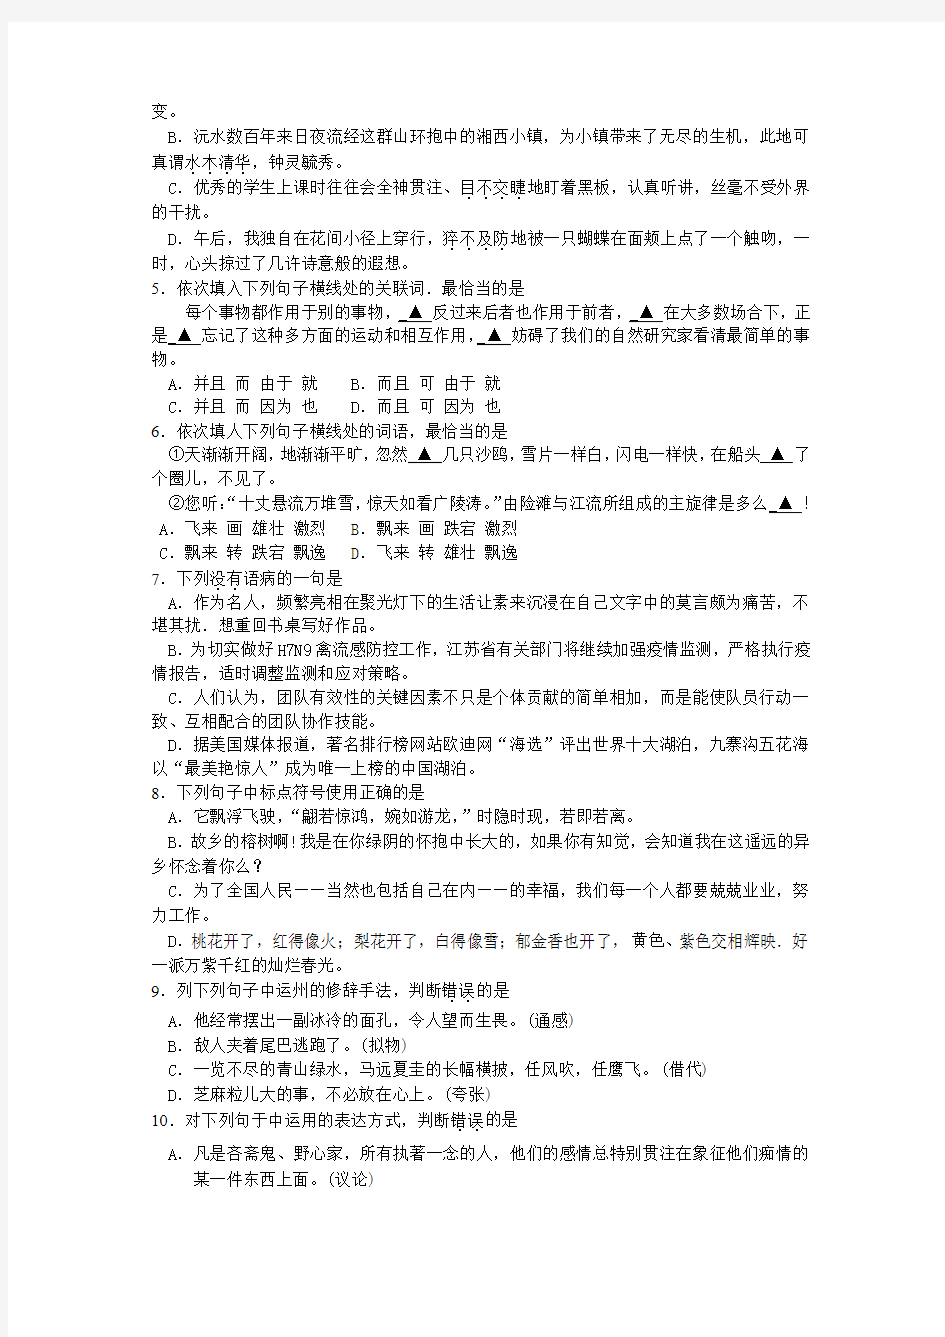 江苏省2013年普通高校对口单招文化统考电子电工专业试题